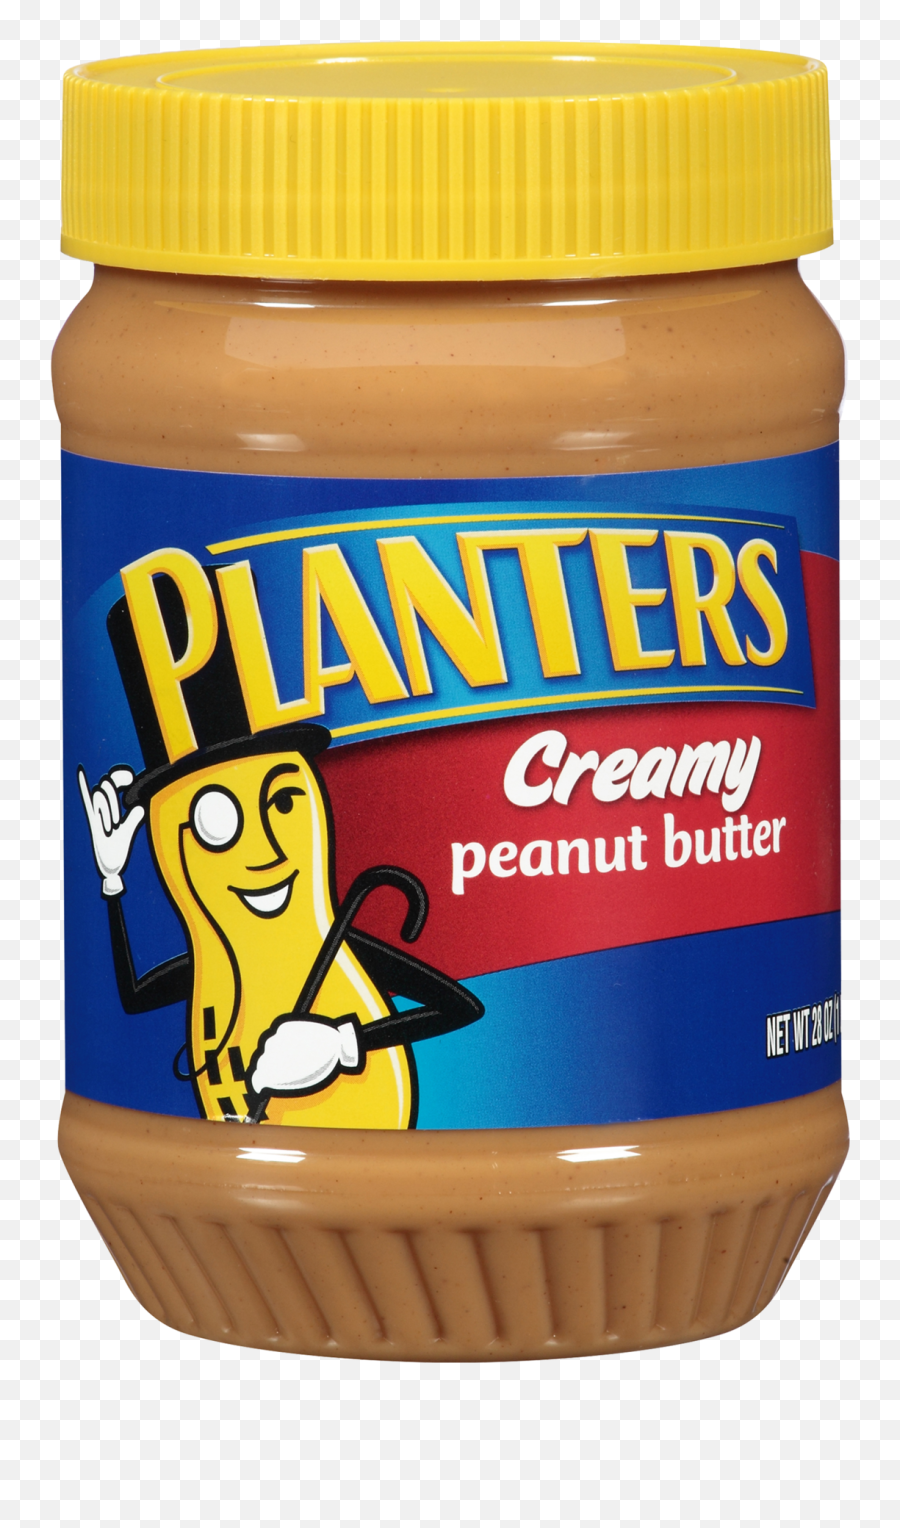 Planters Creamy Peanut Butter 28 Oz Jar - Peanut Butter Planters Png,Peanut Butter Png